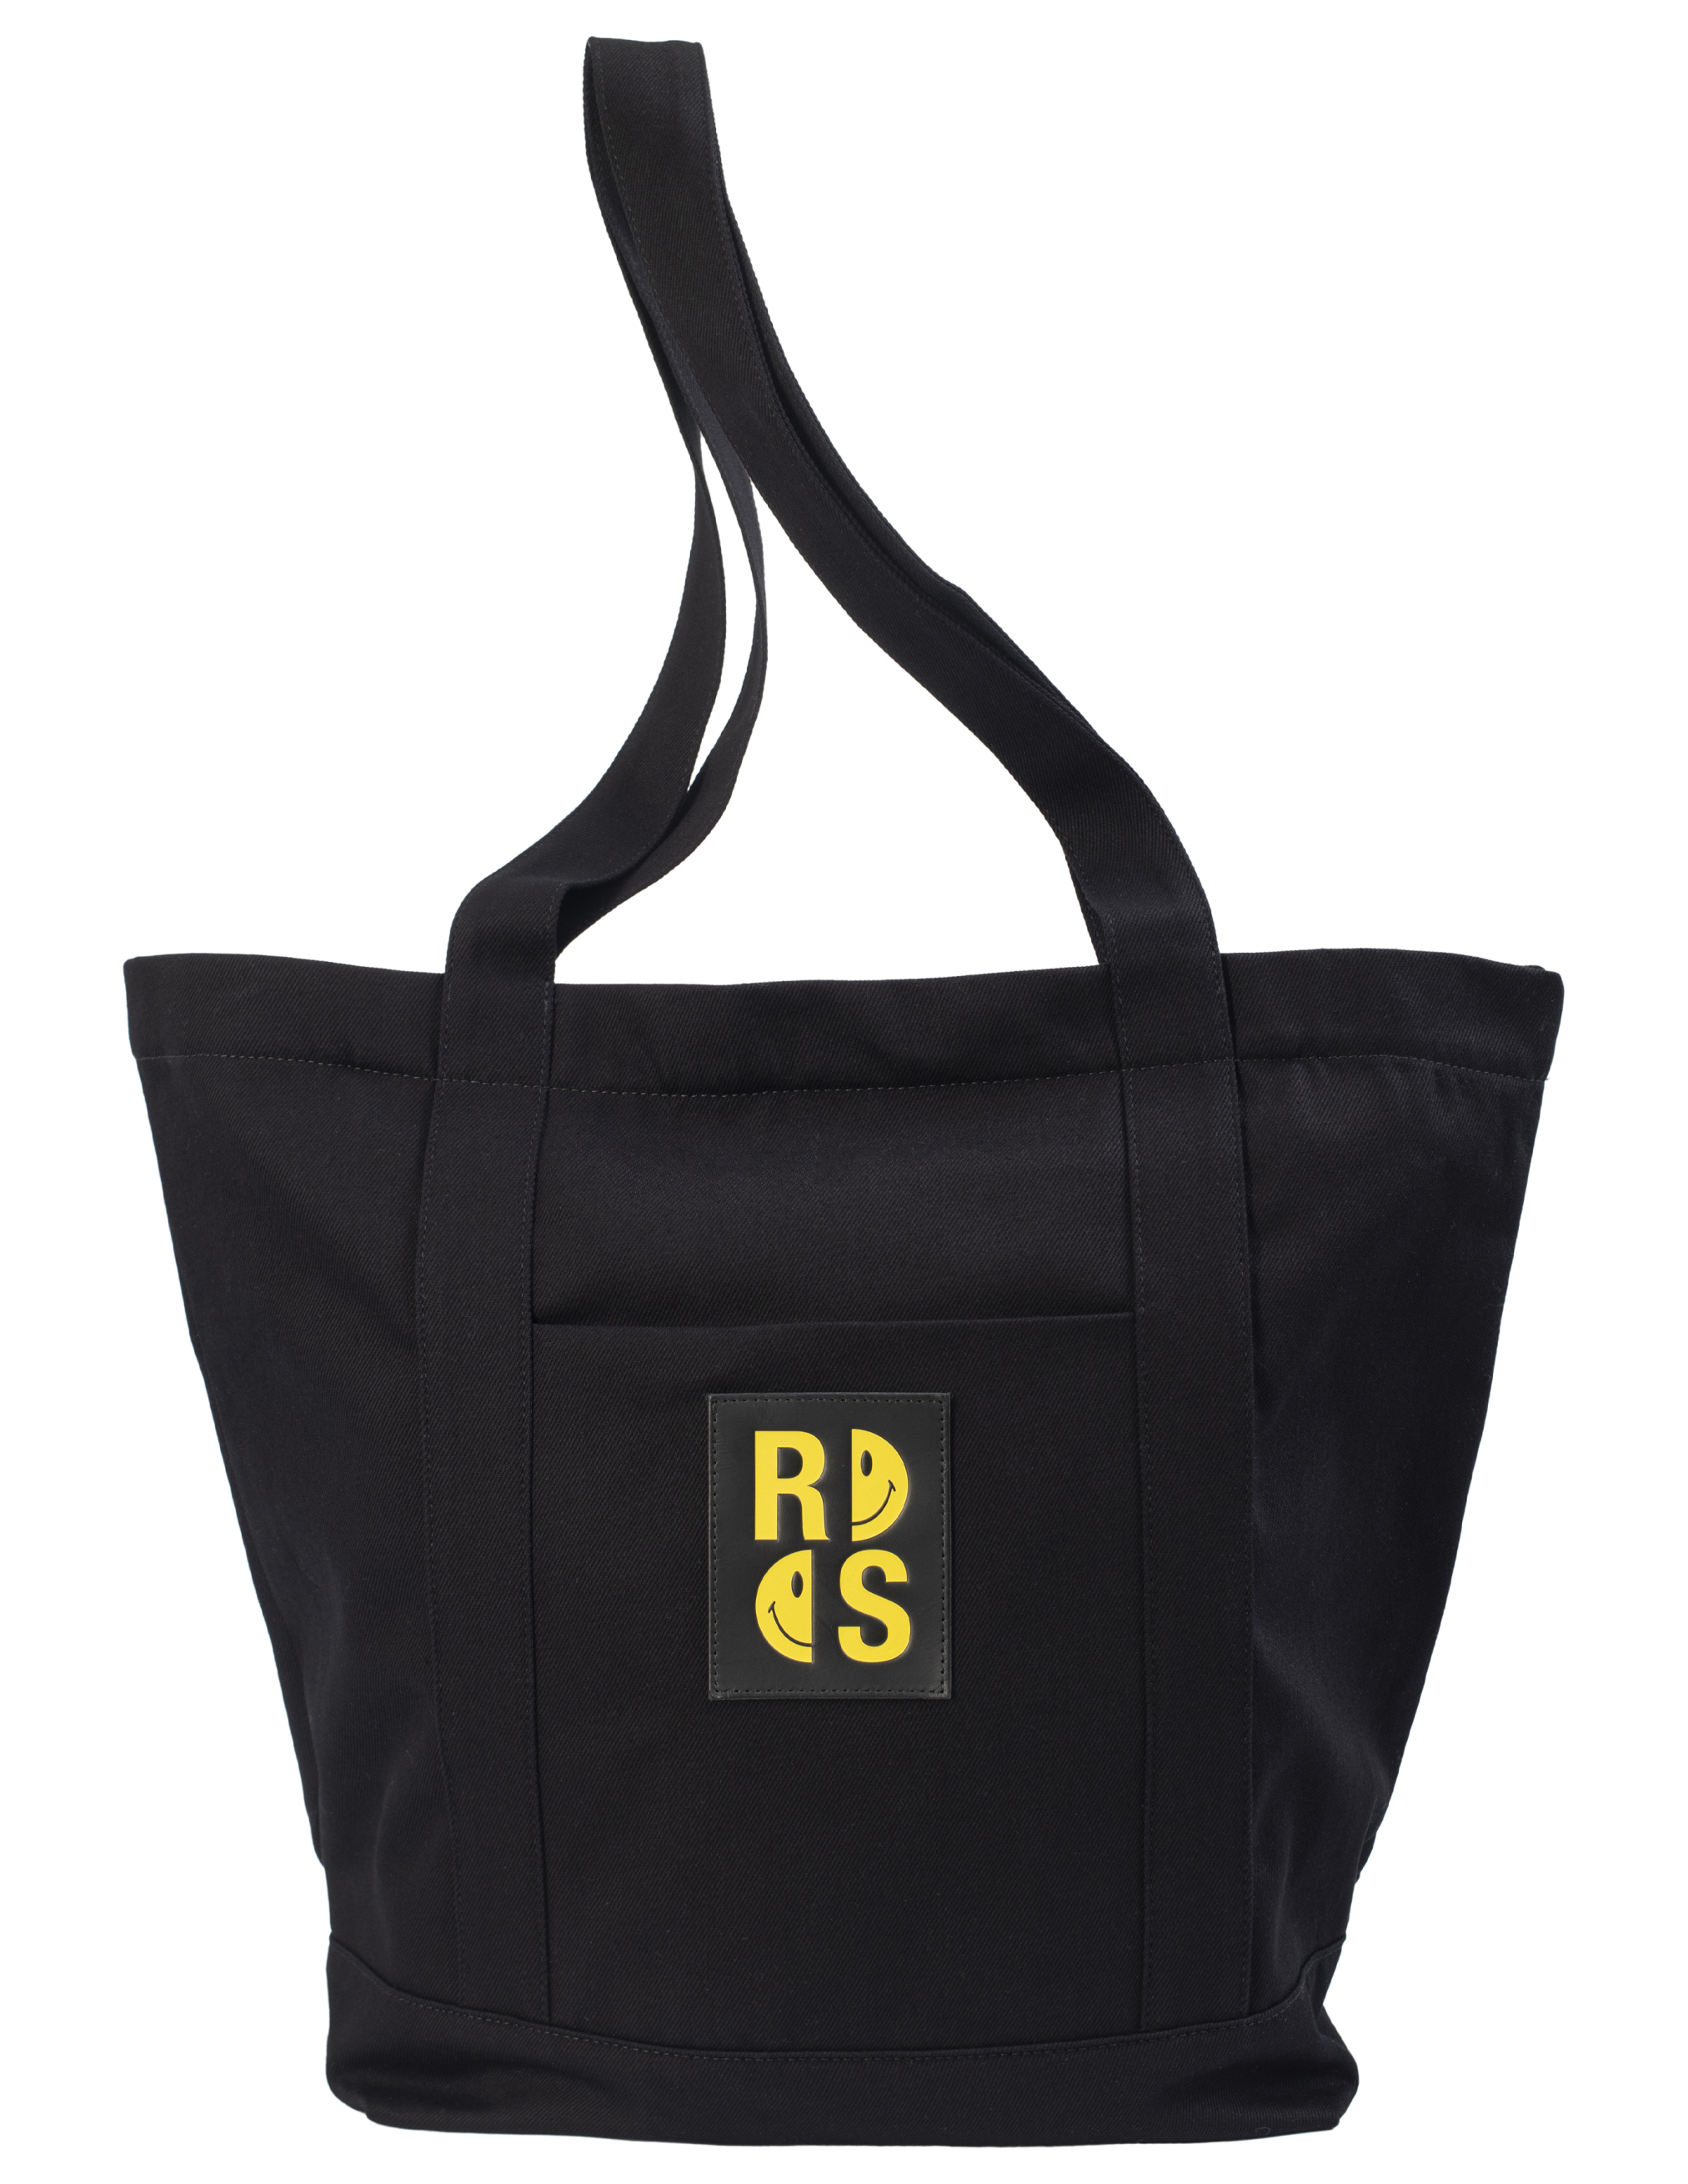 Где купить Джинсовая сумка-шоппер Raf Simons x Smiley с патчем Raf Simons 